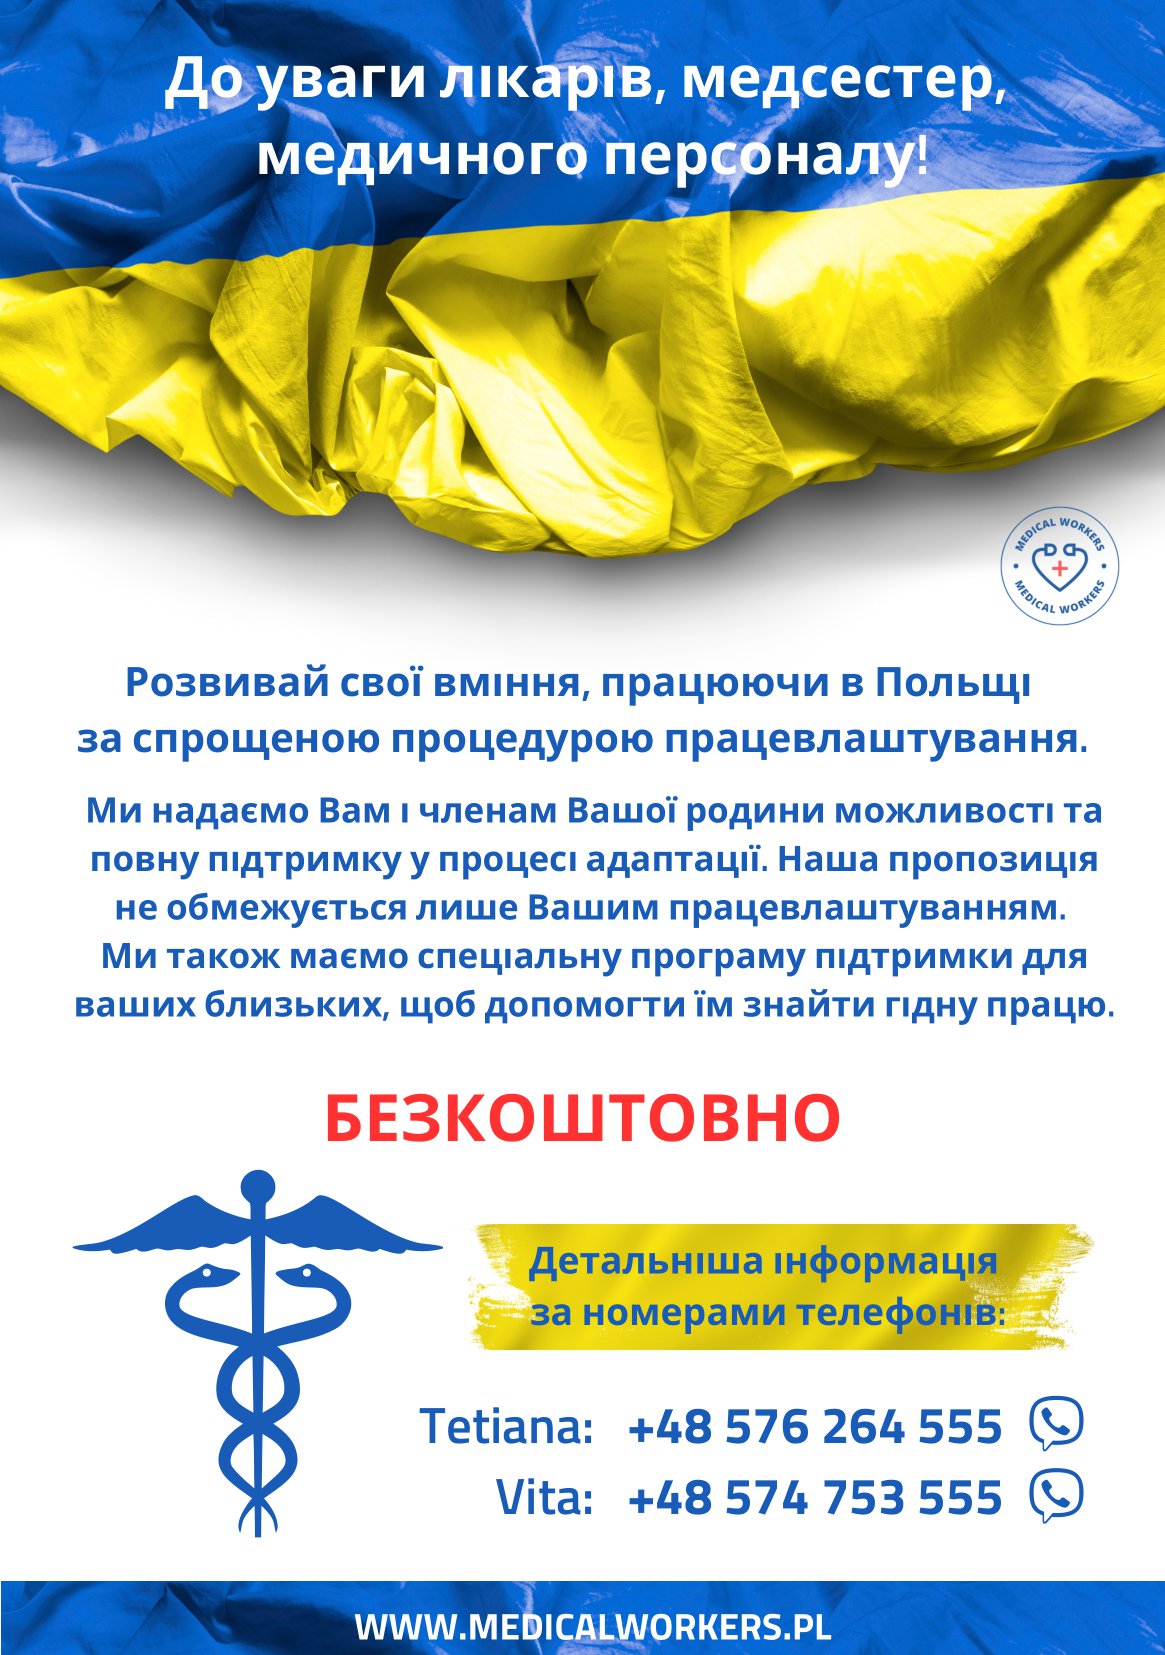 Personel medyczny - ulotka informacyjna w języku ukraińskim (strona 1)